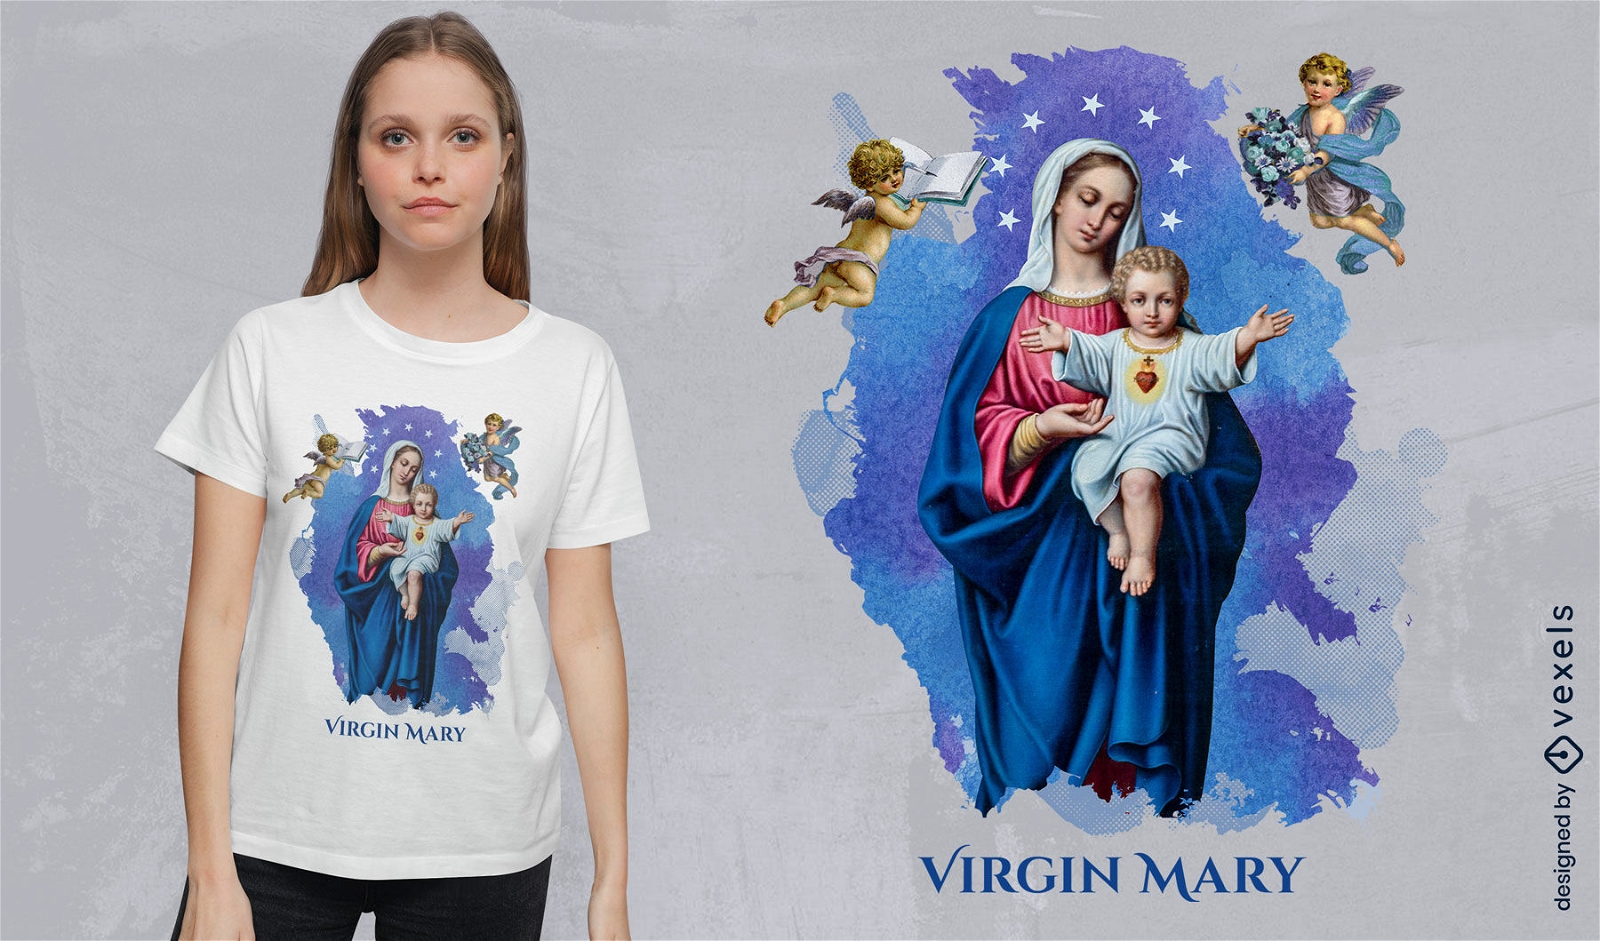 Virgin mary religious t-shirt design